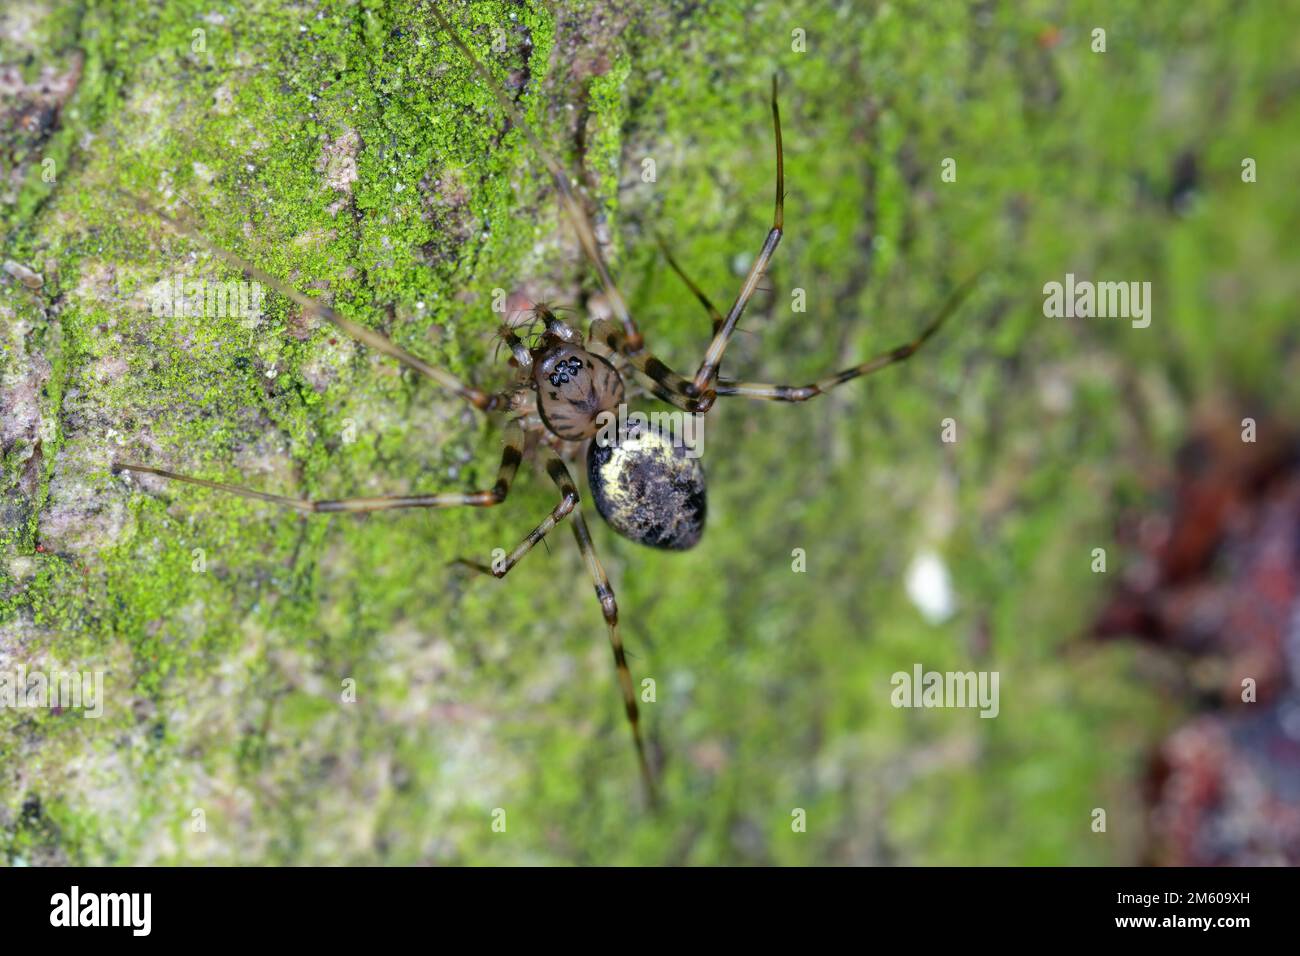 Une araignée forestière sur le bois d'un arbre. Un prédateur qui se nourrit d'autres petits invertébrés. Banque D'Images